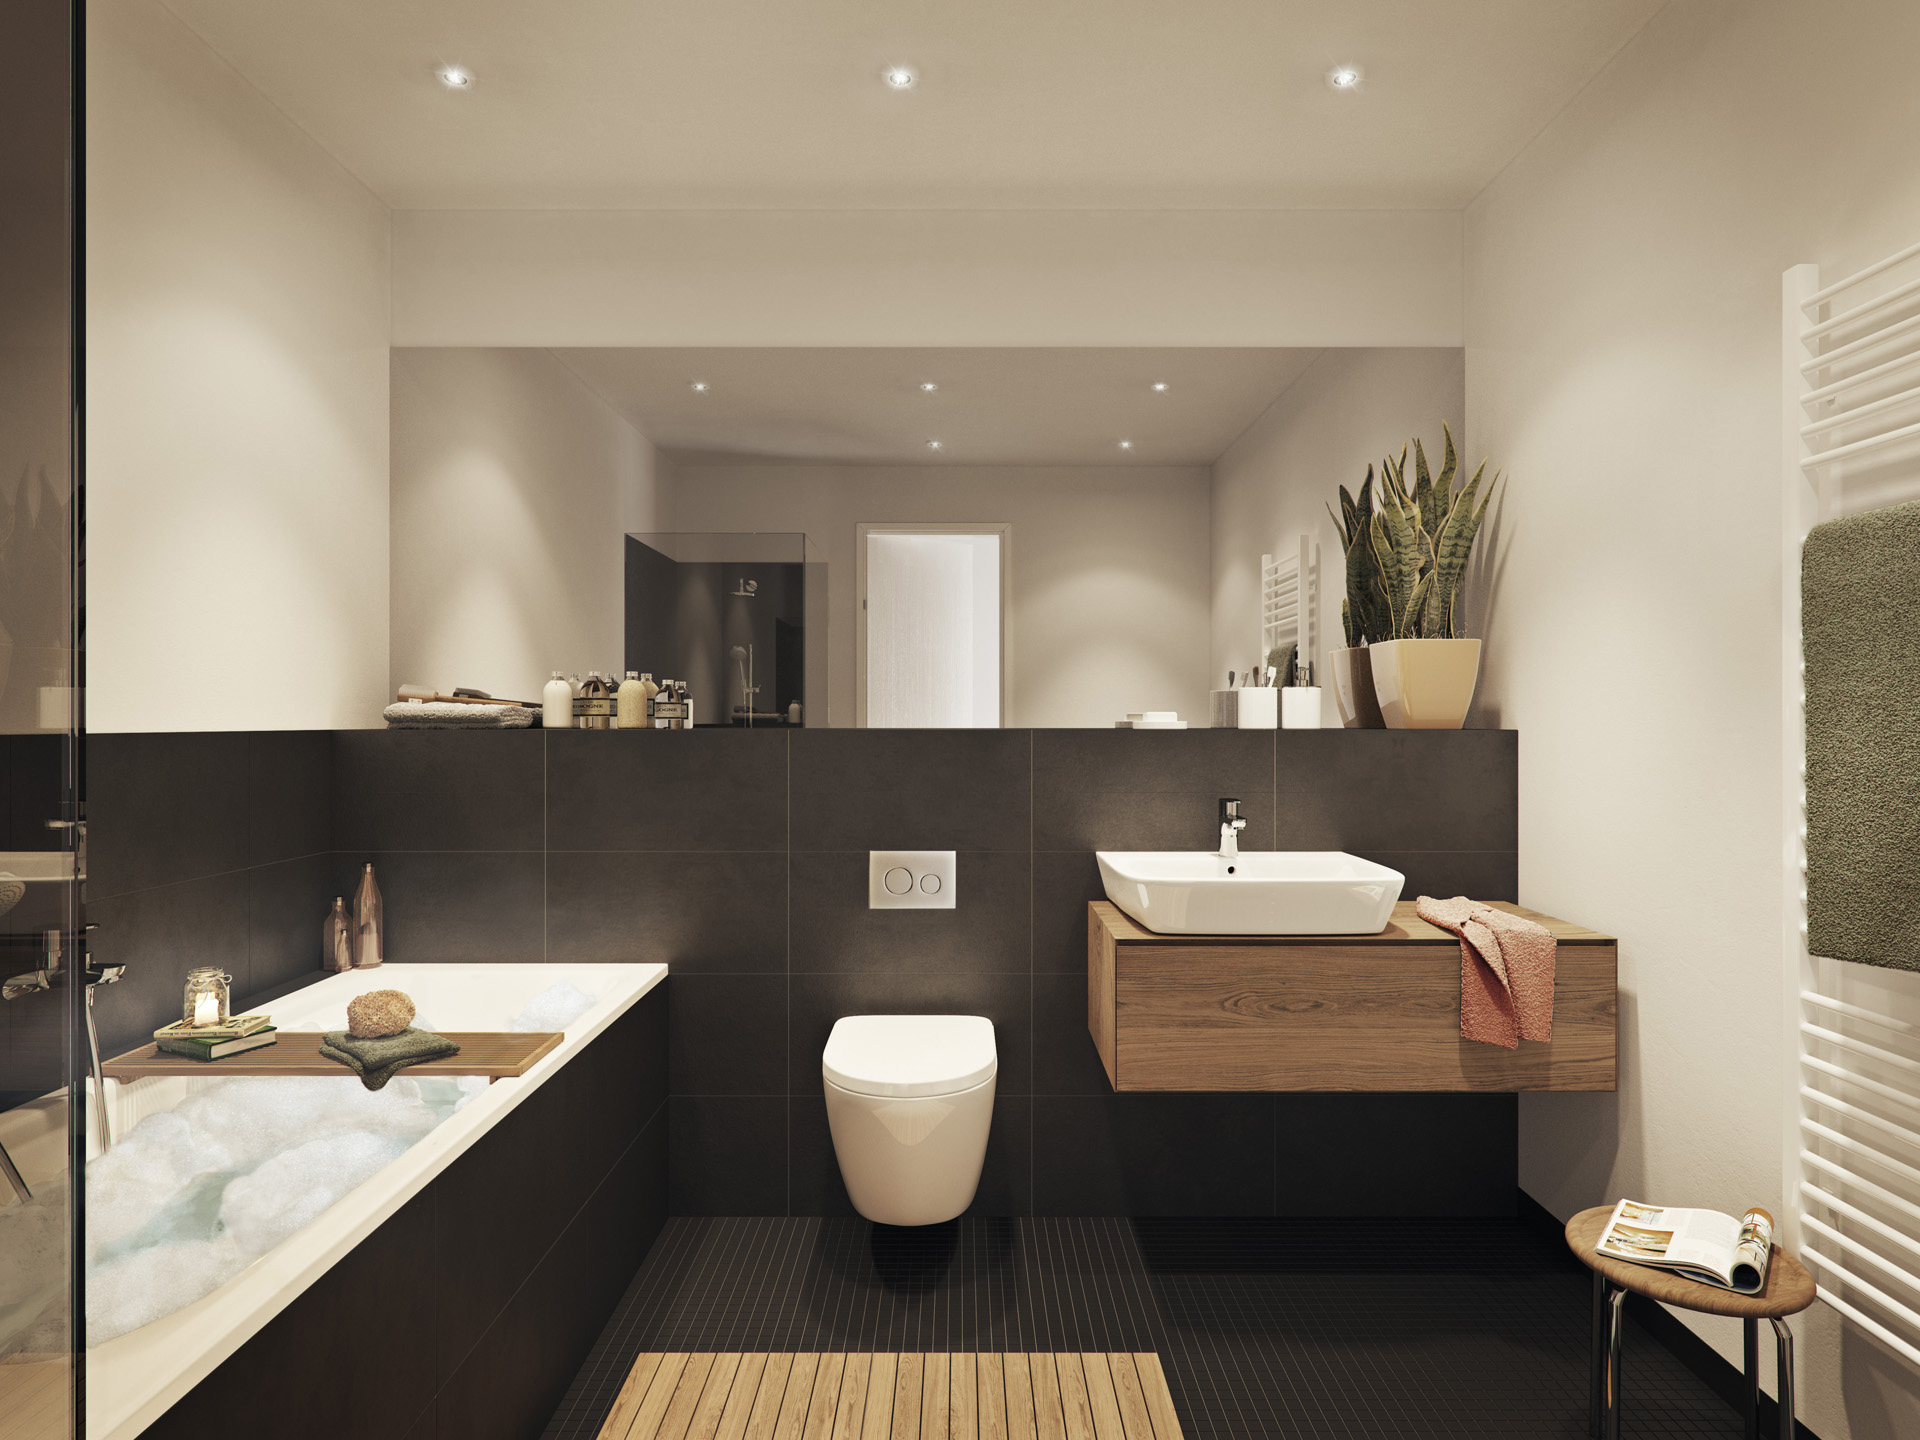 A Space_bathroom_summer_architectural_visual_by_xoio